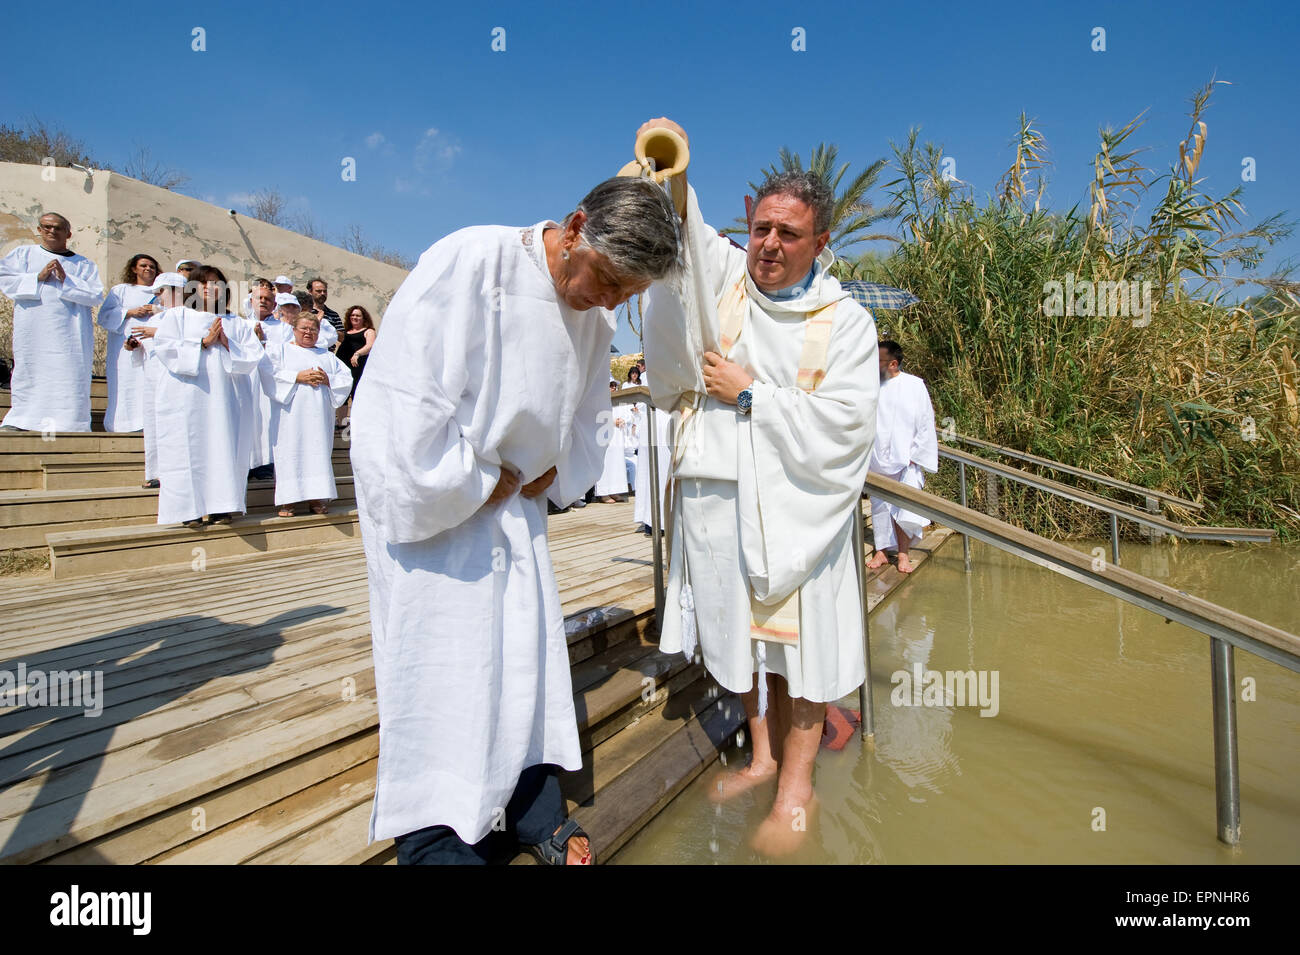 Yeriho, ISRAEL - Oct 15, 2014: Un hombre es ser bautizado por el agua durante un bautismo ritual en Qasr el Yahud cerca Yeriho en la Jo Foto de stock